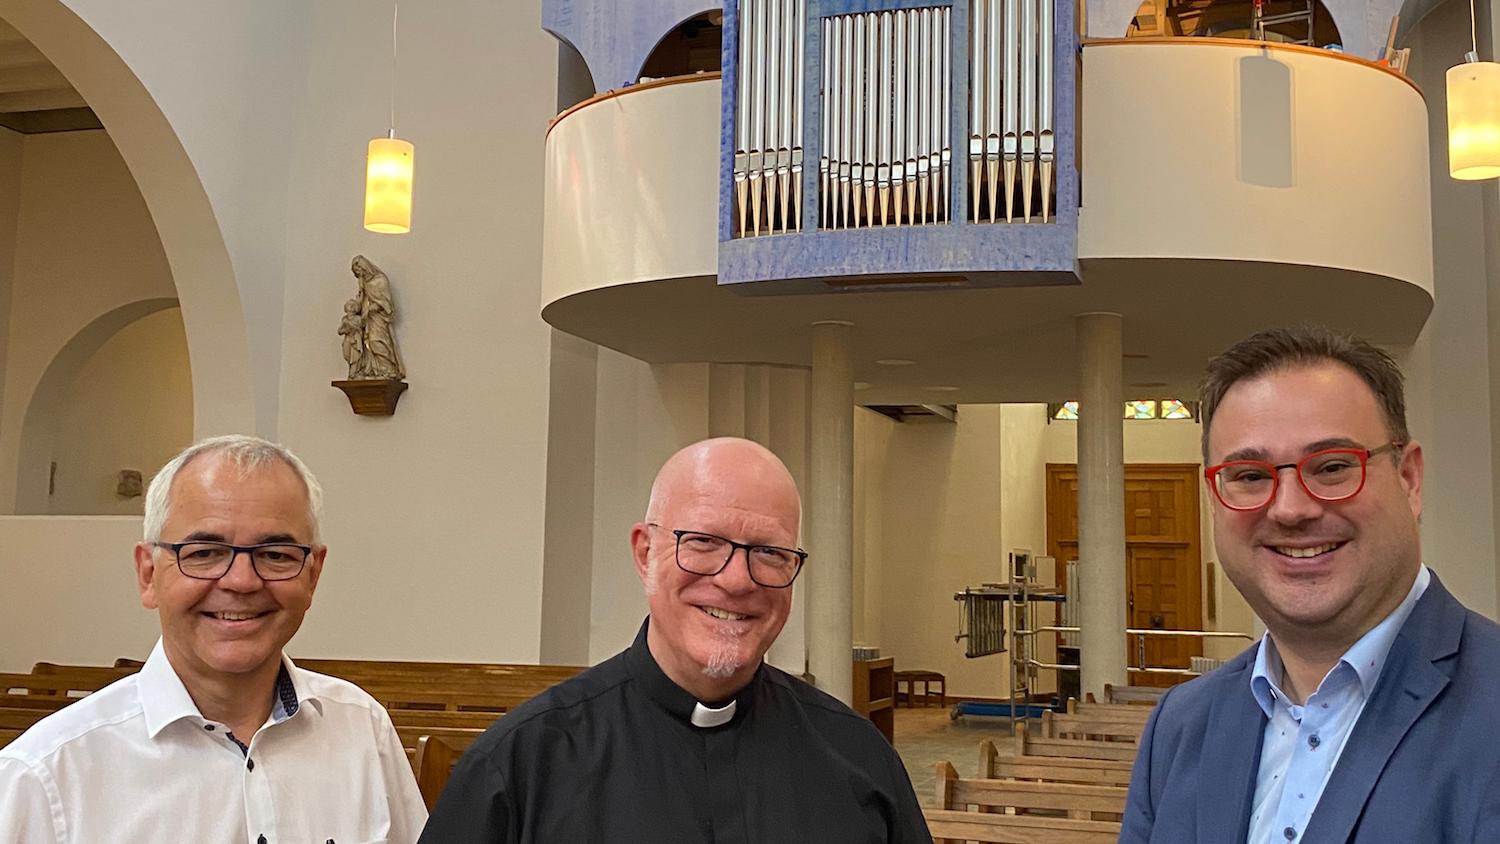 Josef Viethen vom Orgelbauverein, Pfarrer Werner Rombach und Kantor Emanuel Knauer (v.l.) freuen sich darauf, die neue Scholz-Orgel in Erkelenz zum ersten Mal in voller Schönheit zu hören. (c) Garnet Manecke